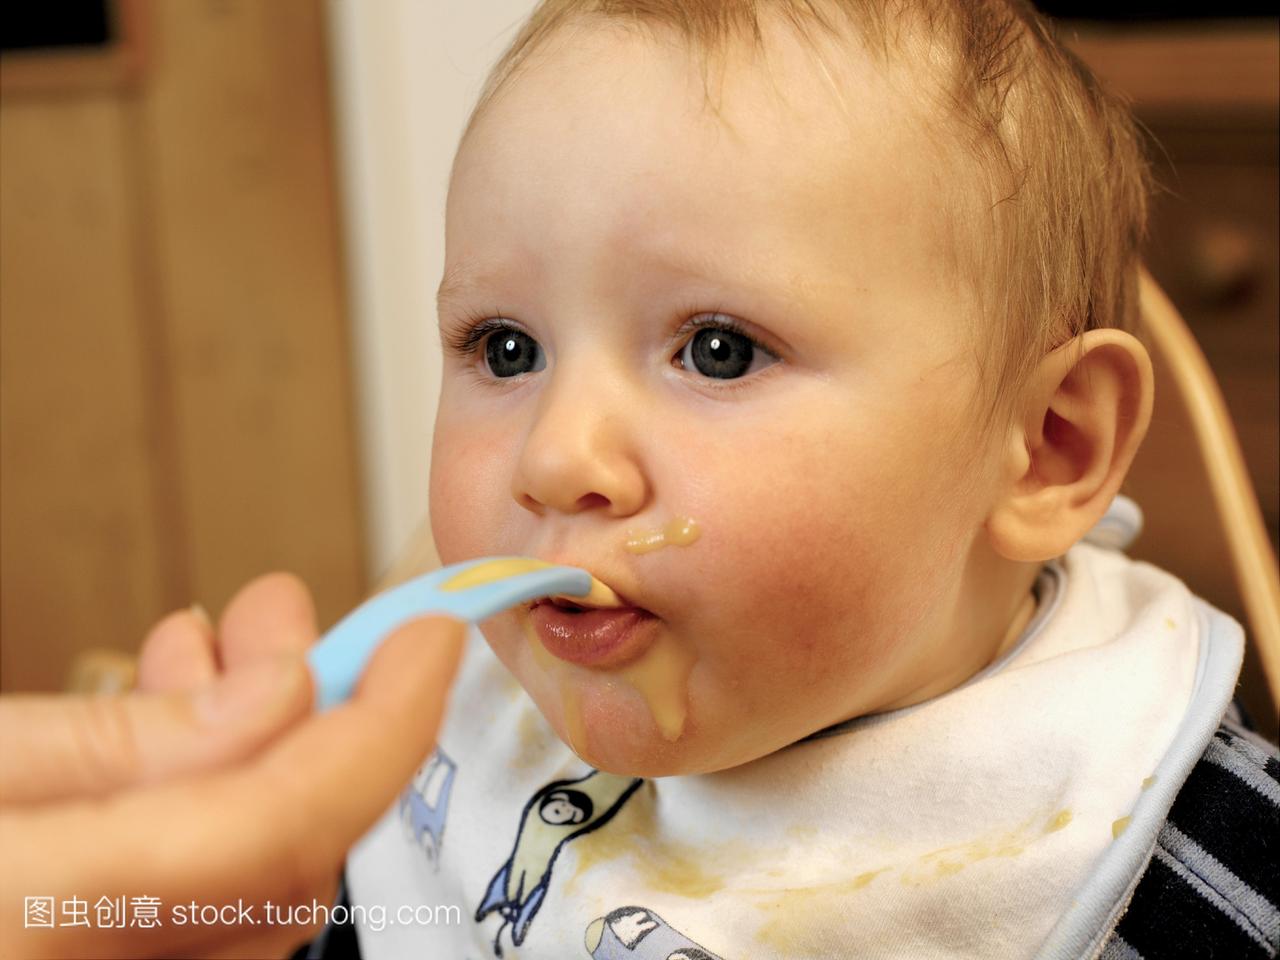 模型发布。小男孩被喂食,7个月大的小男孩用勺